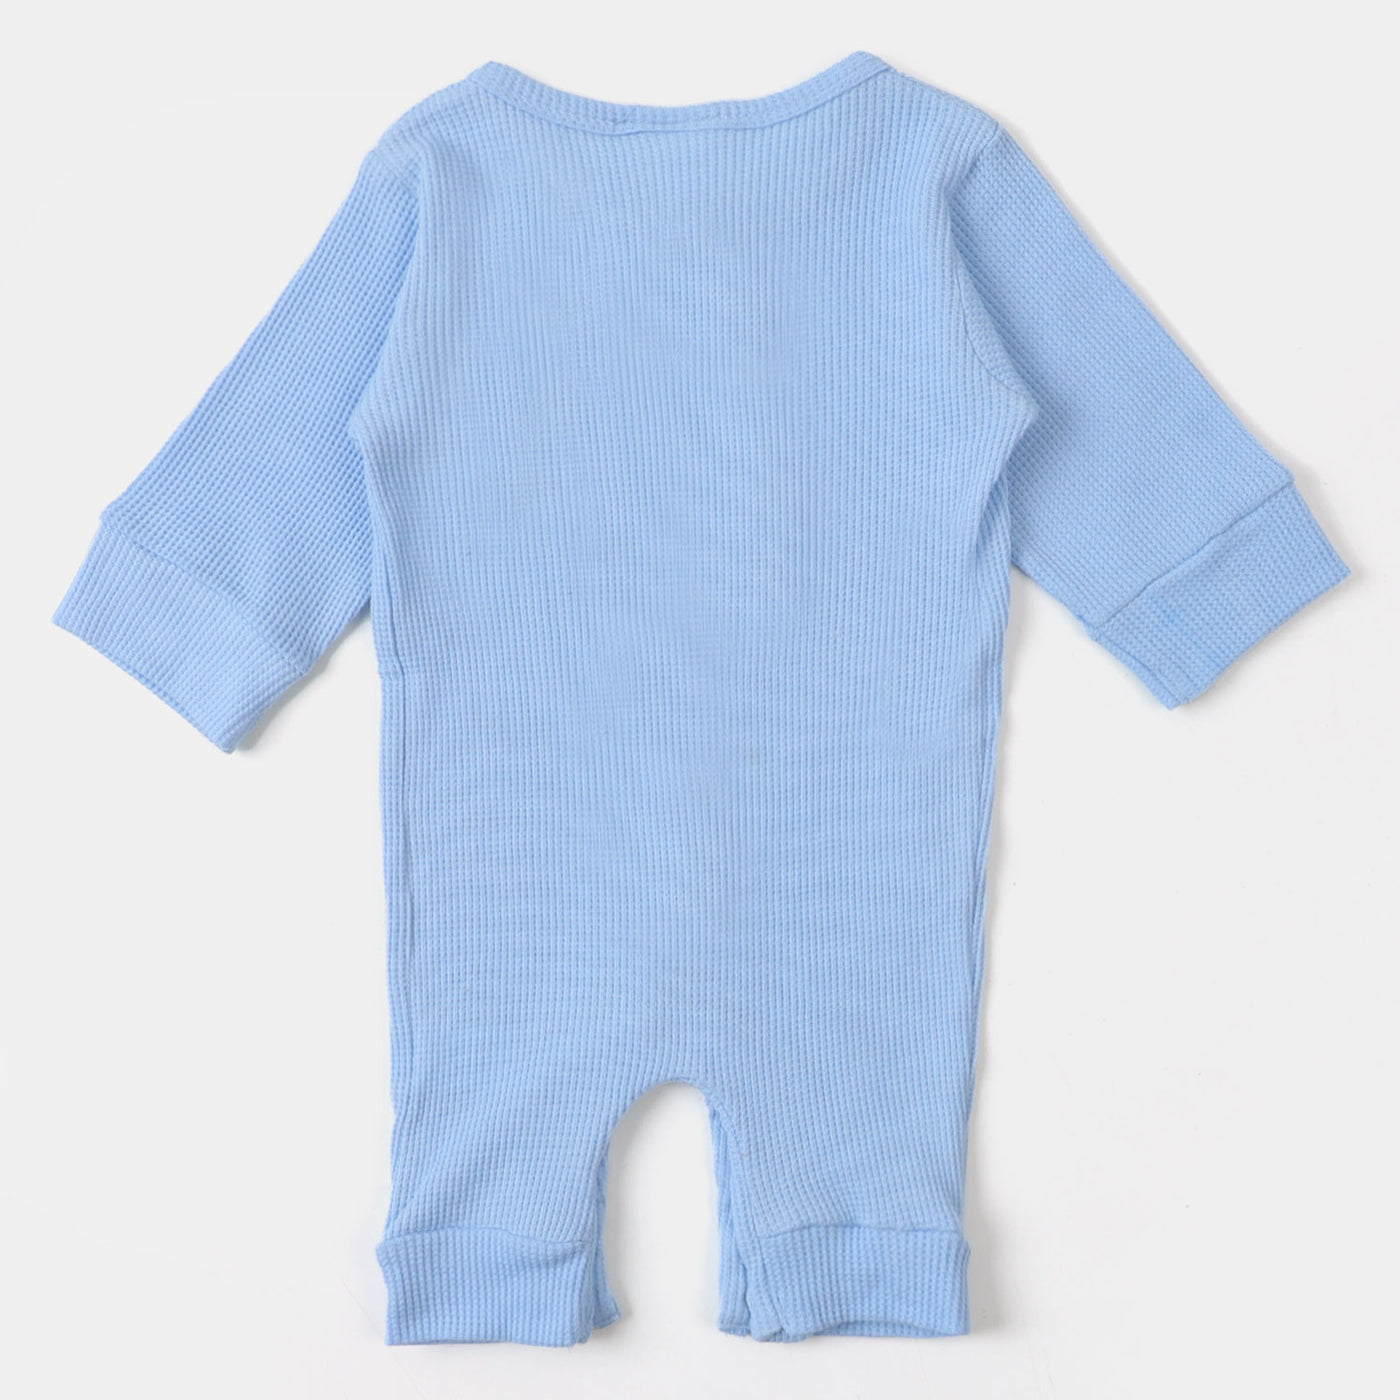 Infant Boys Knitted Romper - SKY BLUE